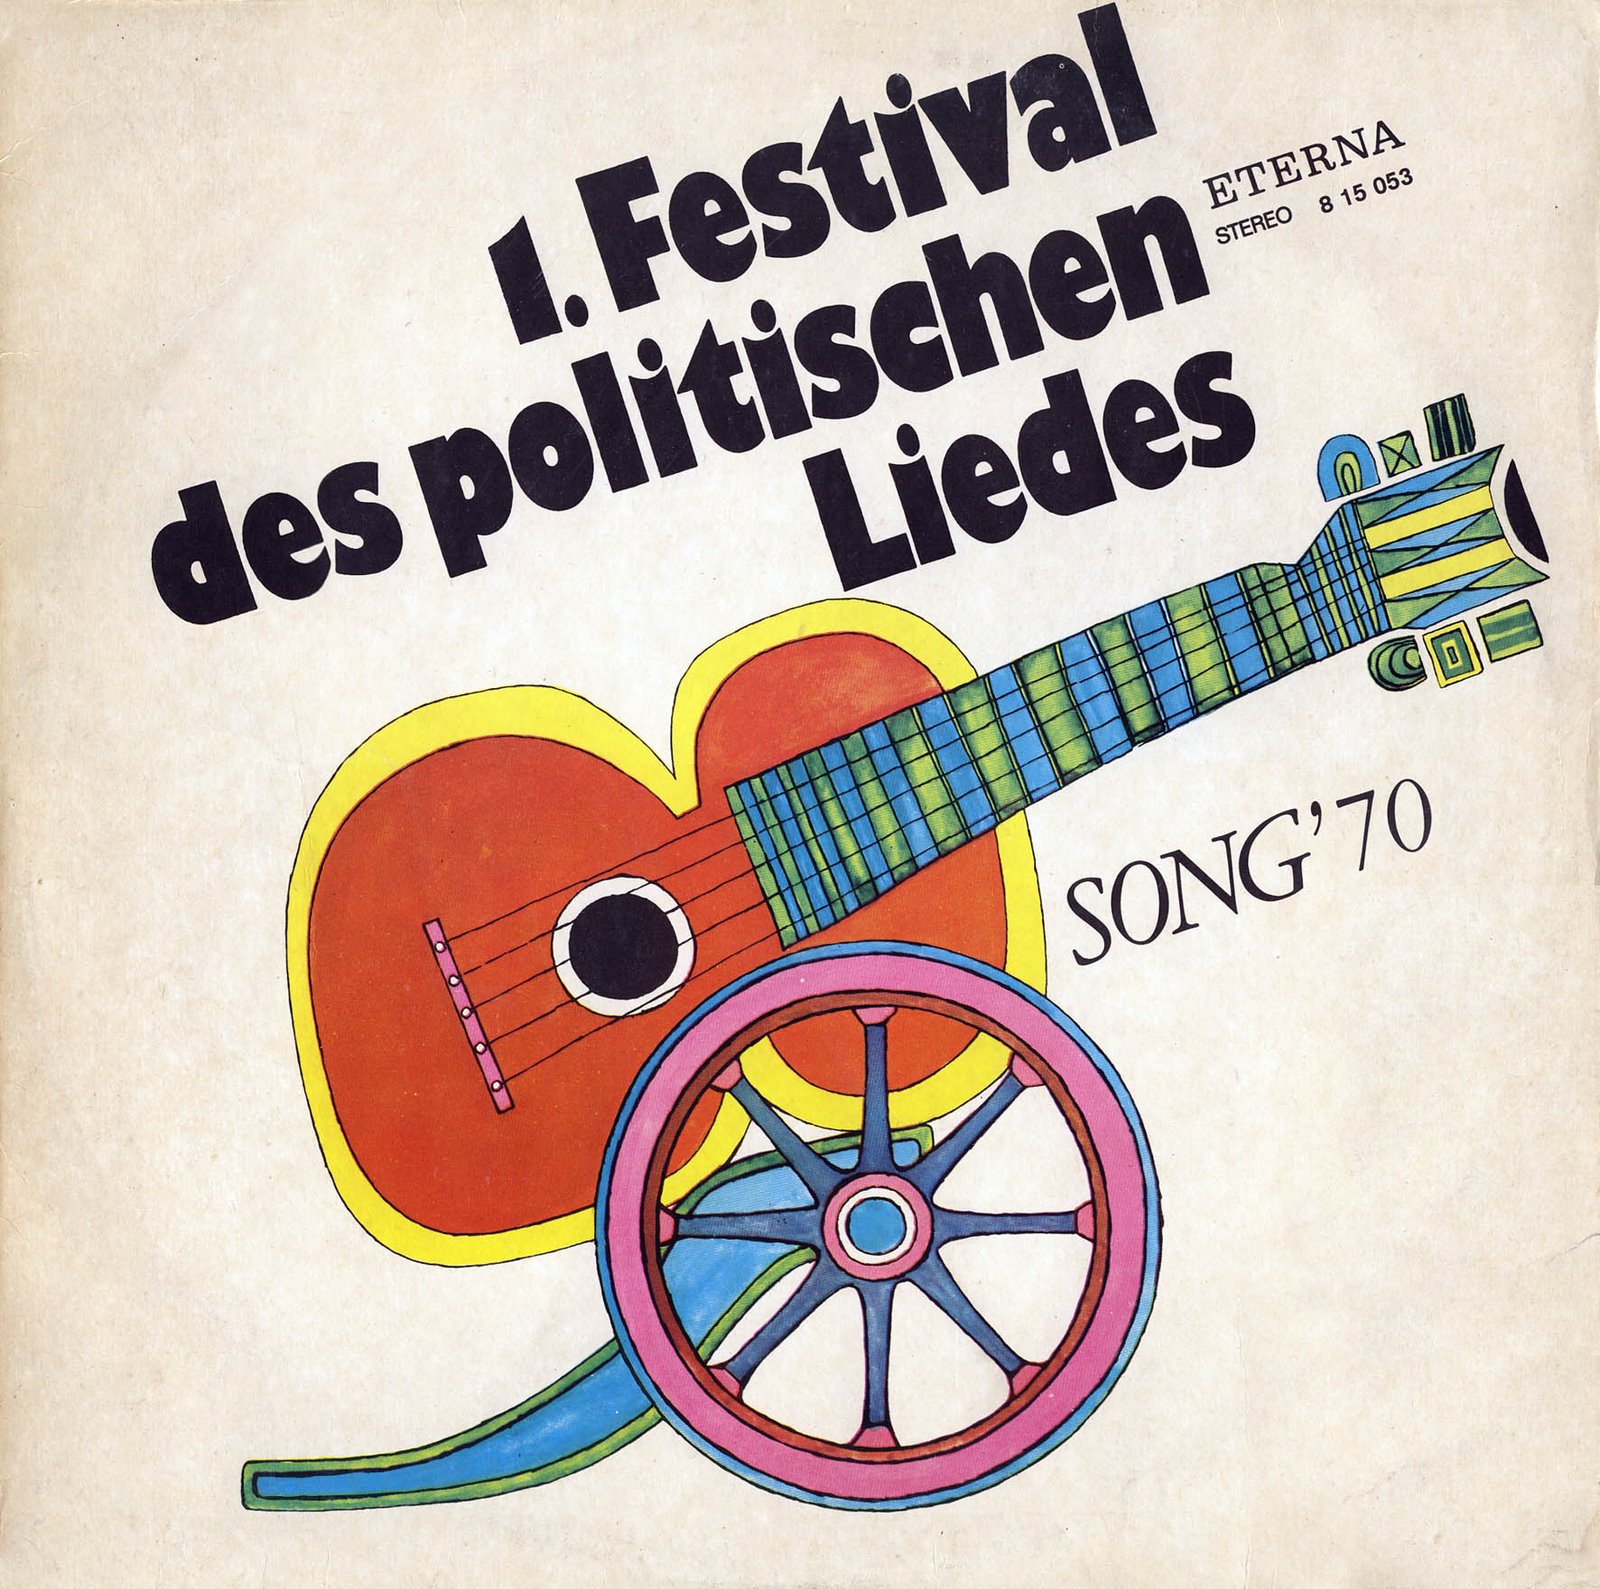 [Festival+des+politischen+Liedes+-+frontal.jpg]